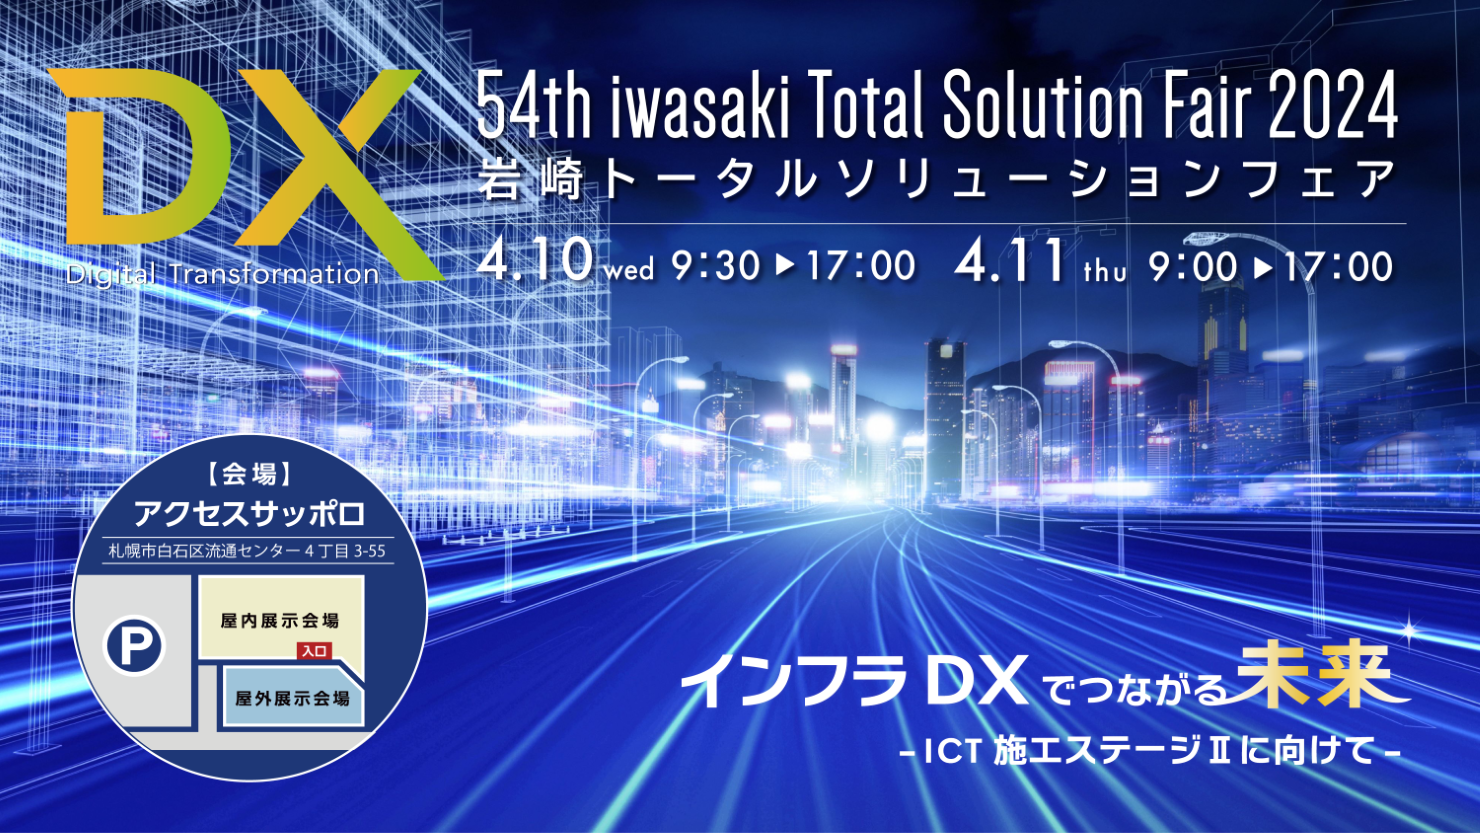 第54回岩崎トータルソリューションフェア2024 インフラDXでつながる未来-ICT施工ステージⅡに向けて-